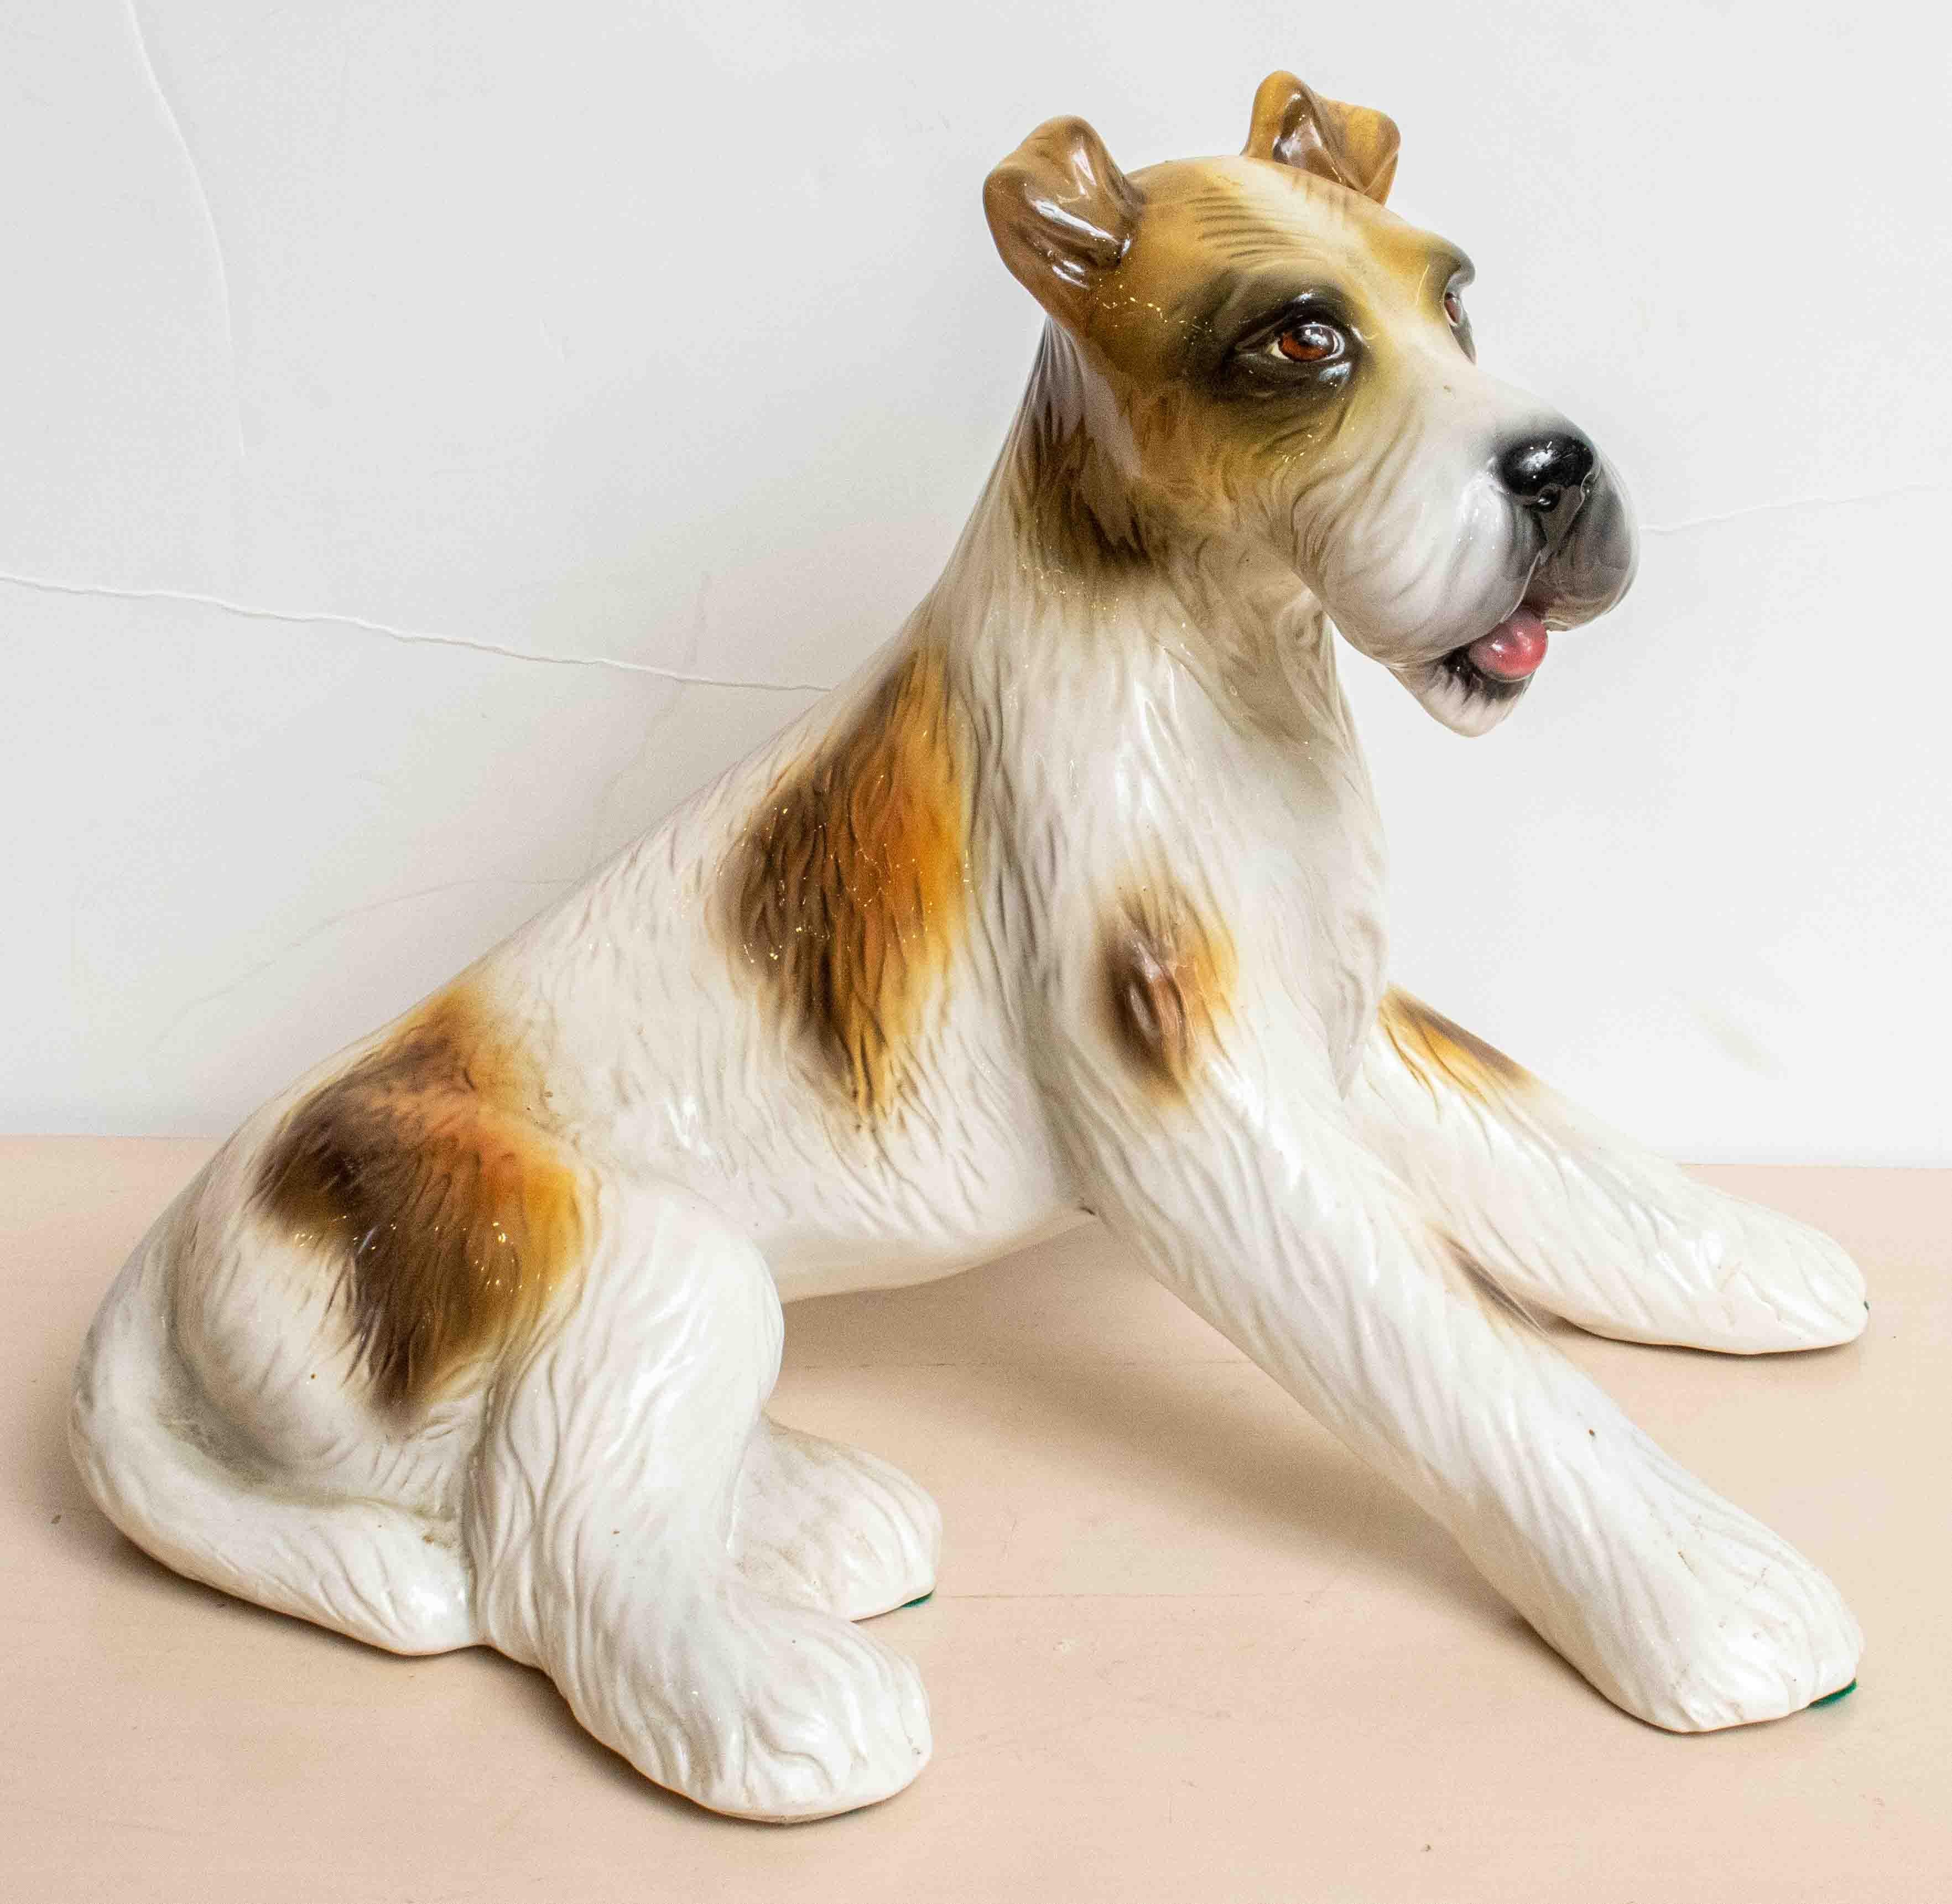 1950er Jahre italienischer Keramikhund eines sitzenden Terriers. Schöne glasierte Weiß-, Braun- und Schwarzfärbung. Schöne Details im Gesicht und am Körper.